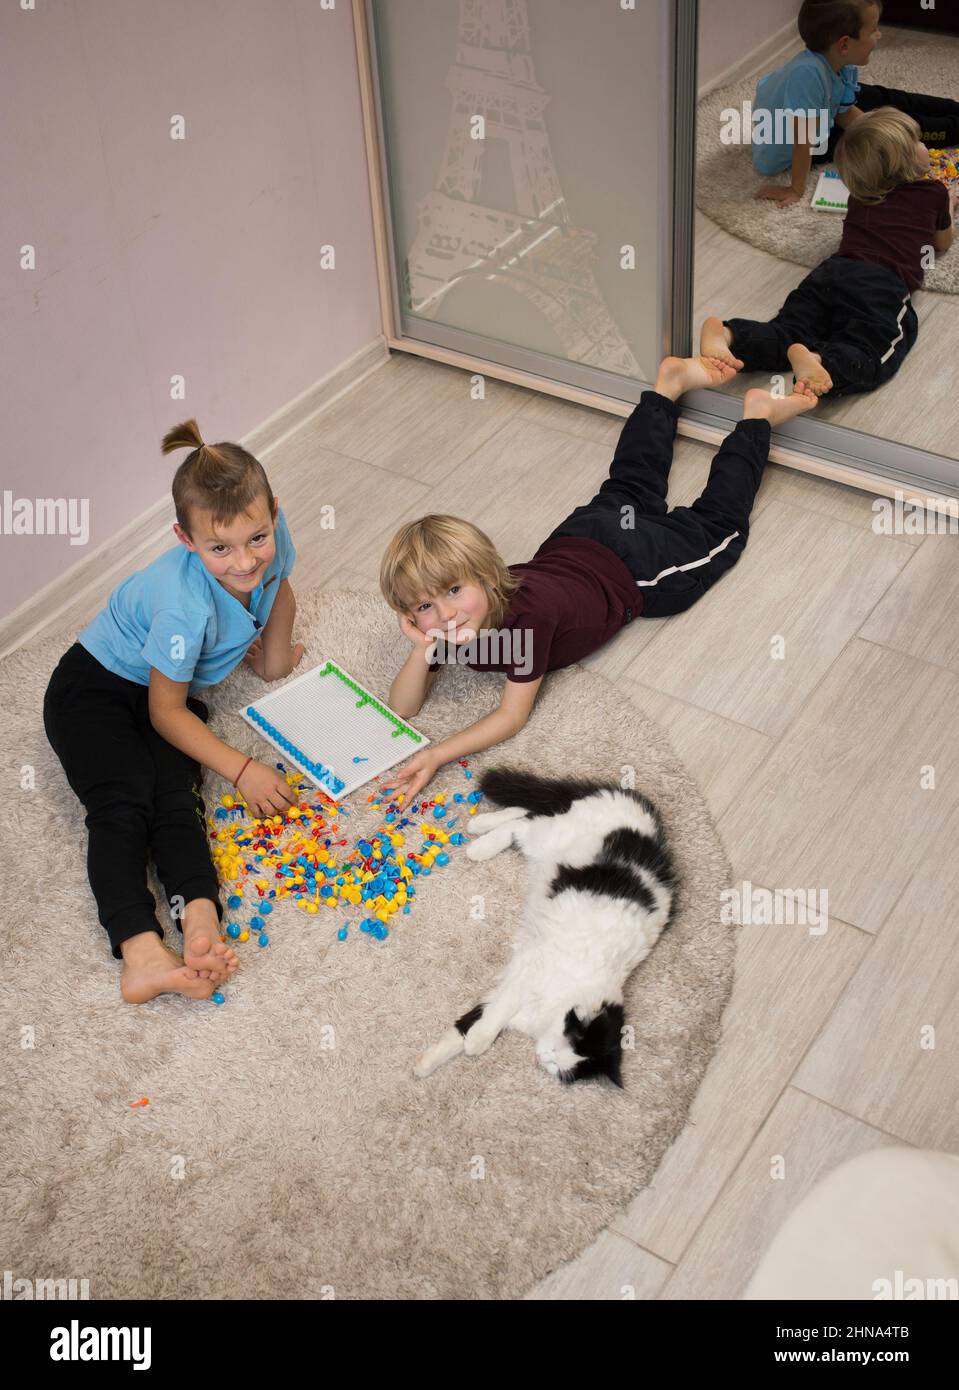 2 Barfußjungen Vorschulkinder spielen mit Spielzeugmosaik auf dem Boden des Kinderzimmers. Pädagogische Spiele, täglich interessante Aktivitäten für Kinder Stockfoto